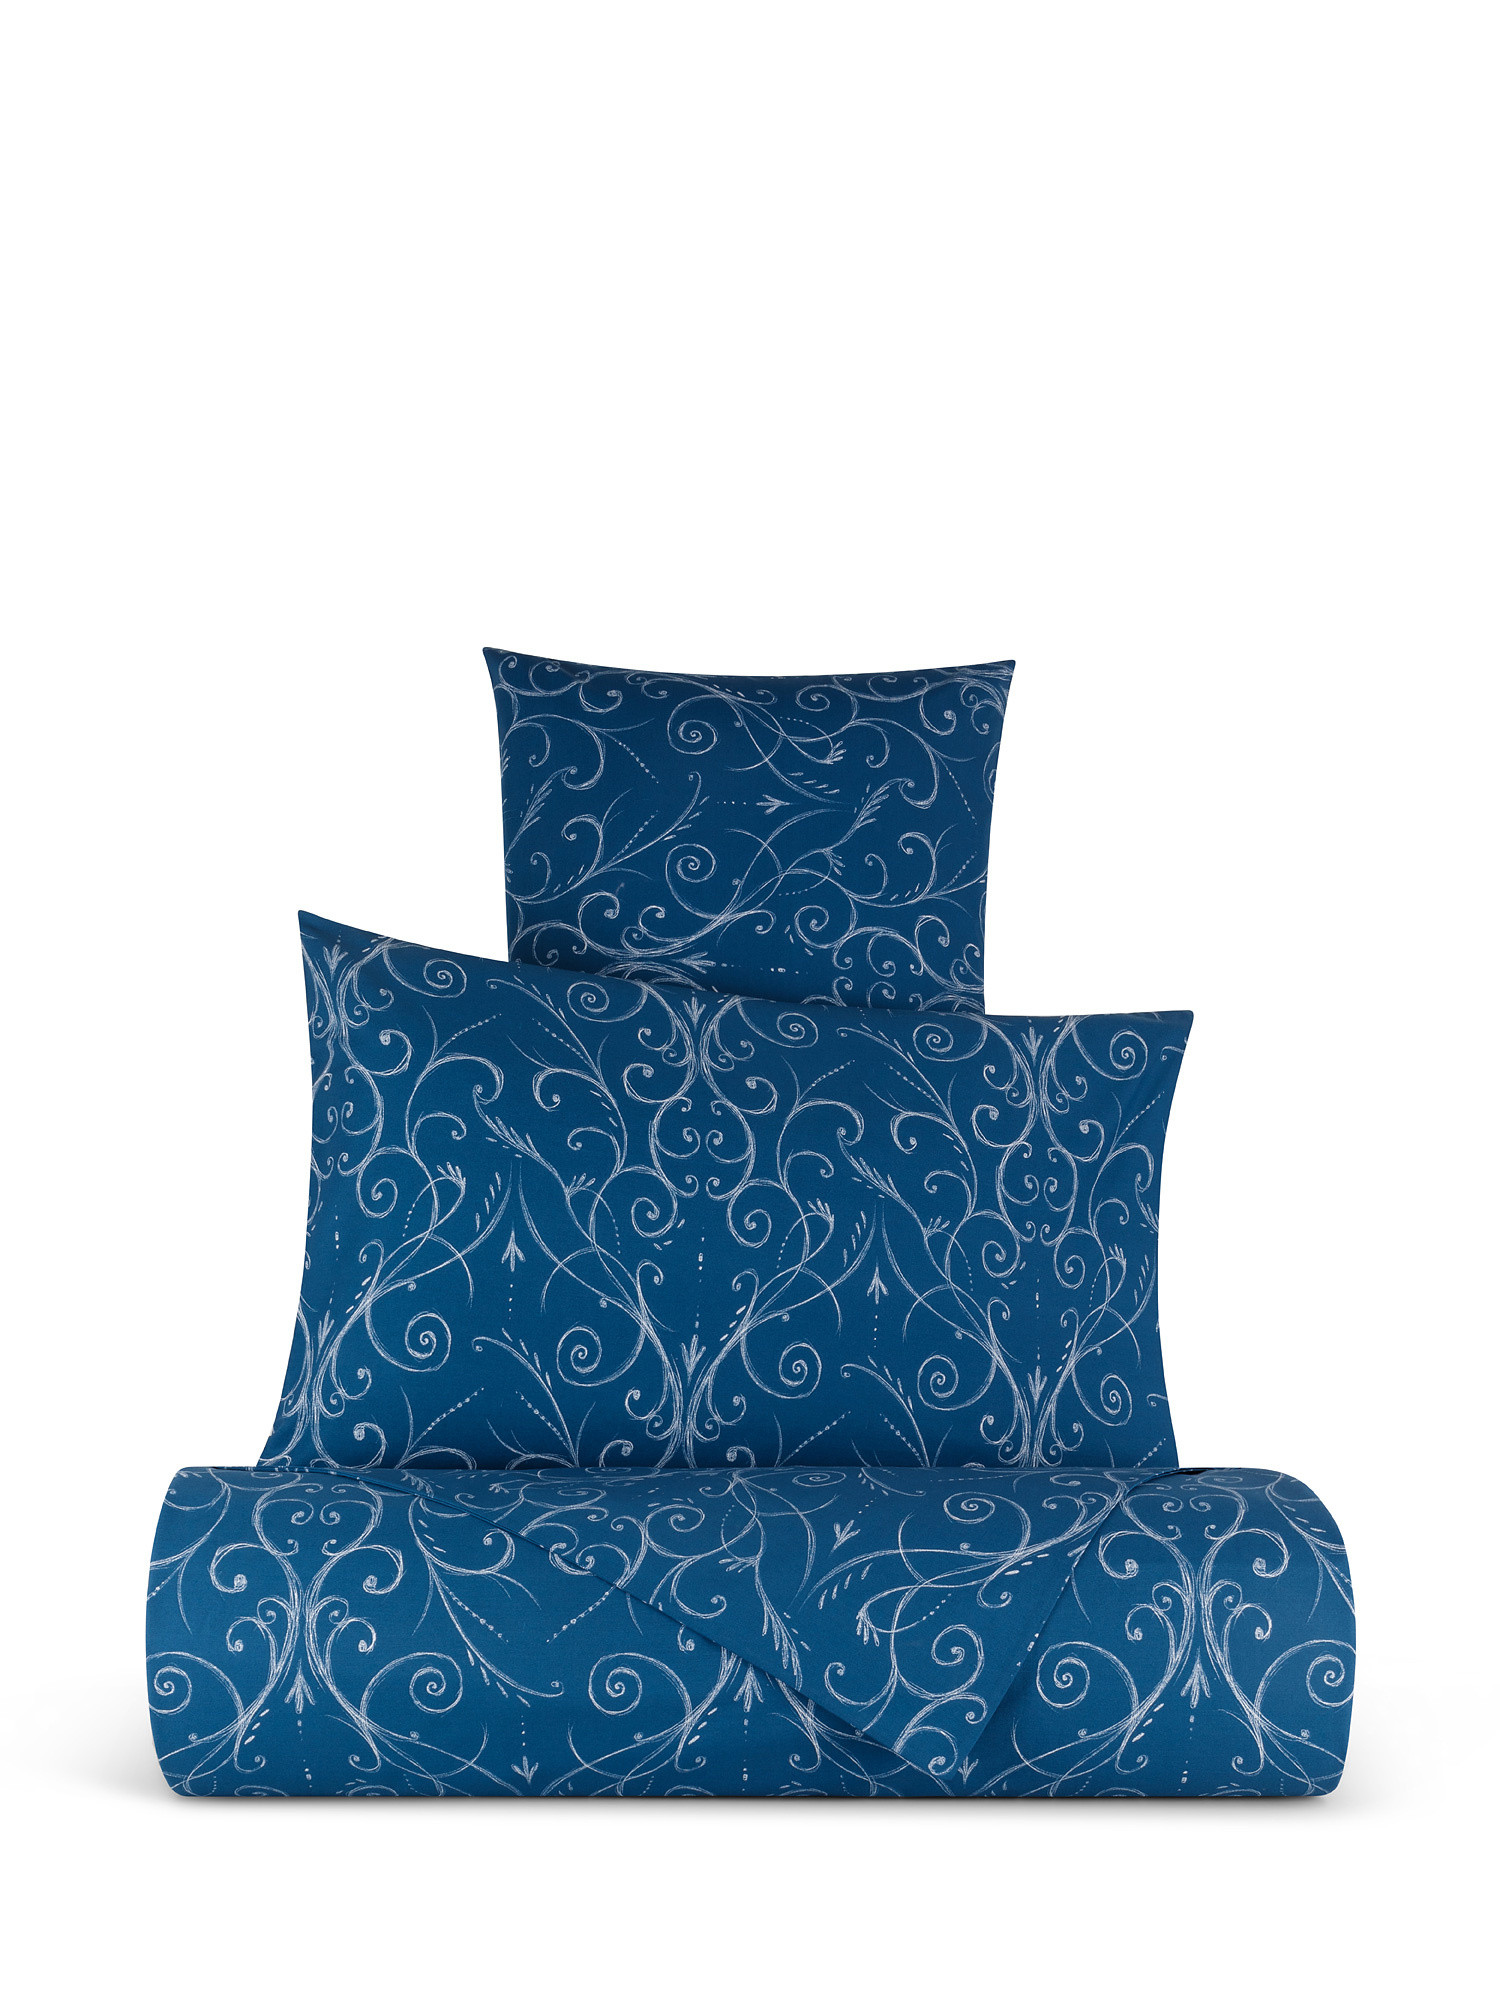 Parure copripiumino cotone percalle motivo ornamentale, Blu, large image number 0